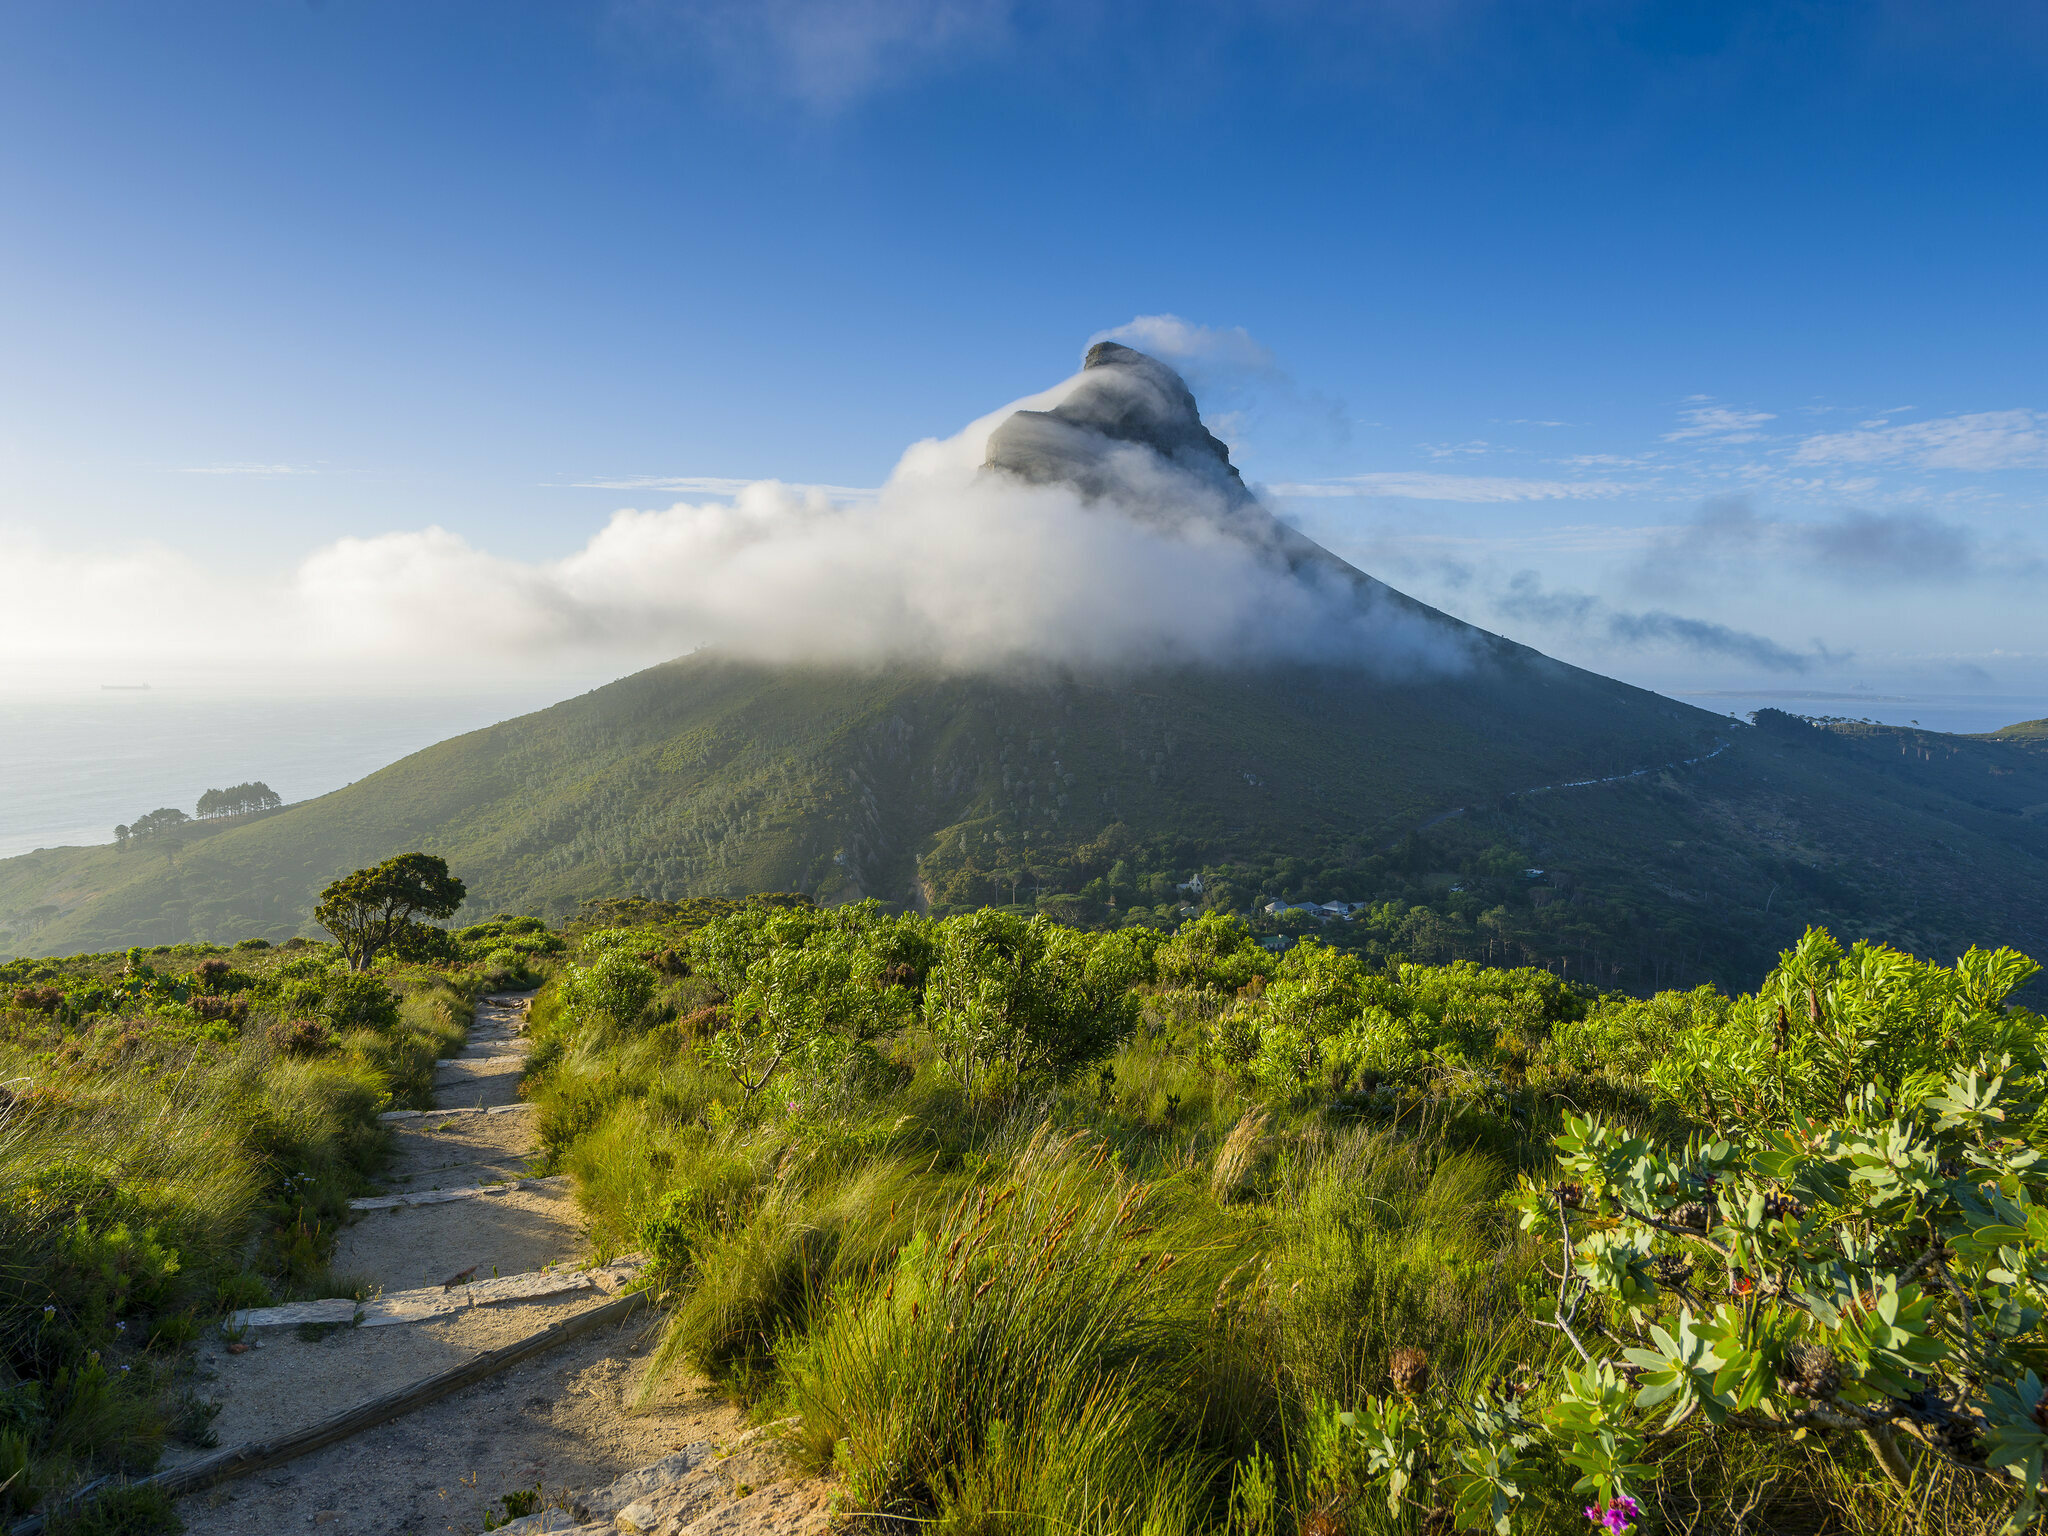 10 Best Walking Trails in Western Cape